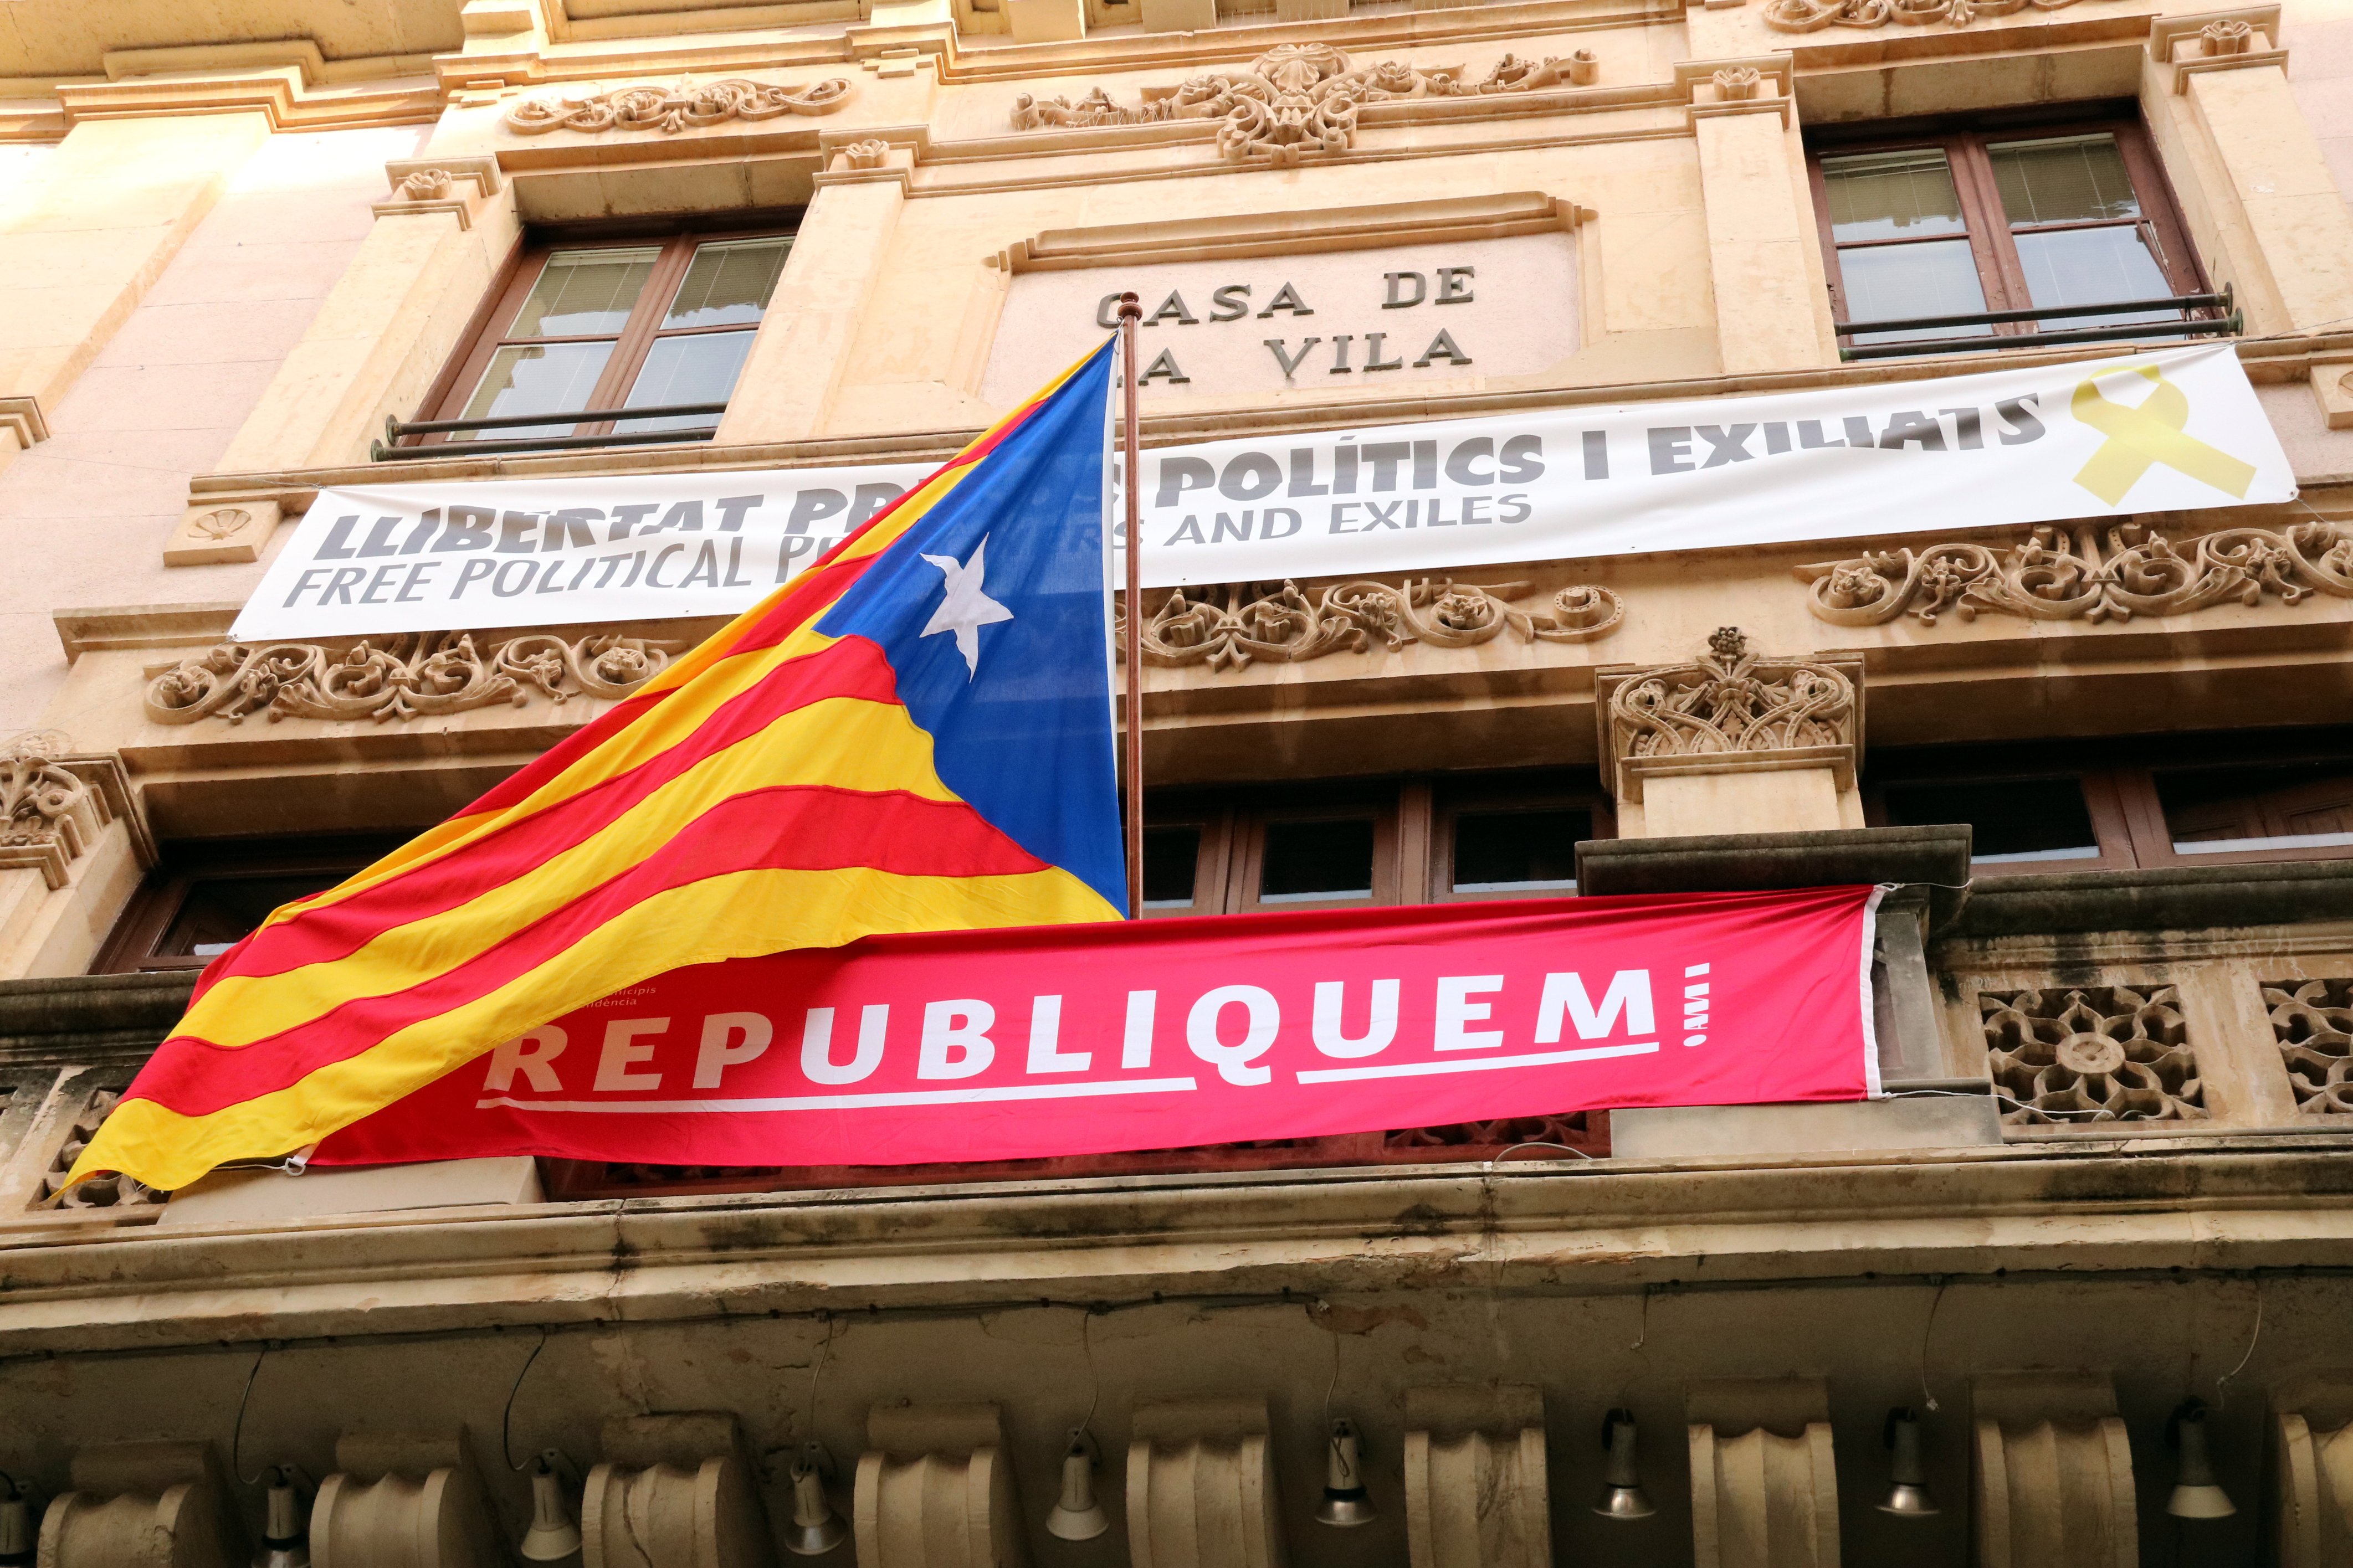 La Junta Electoral ordena a Valls y Amposta retirar lazos y pancartas